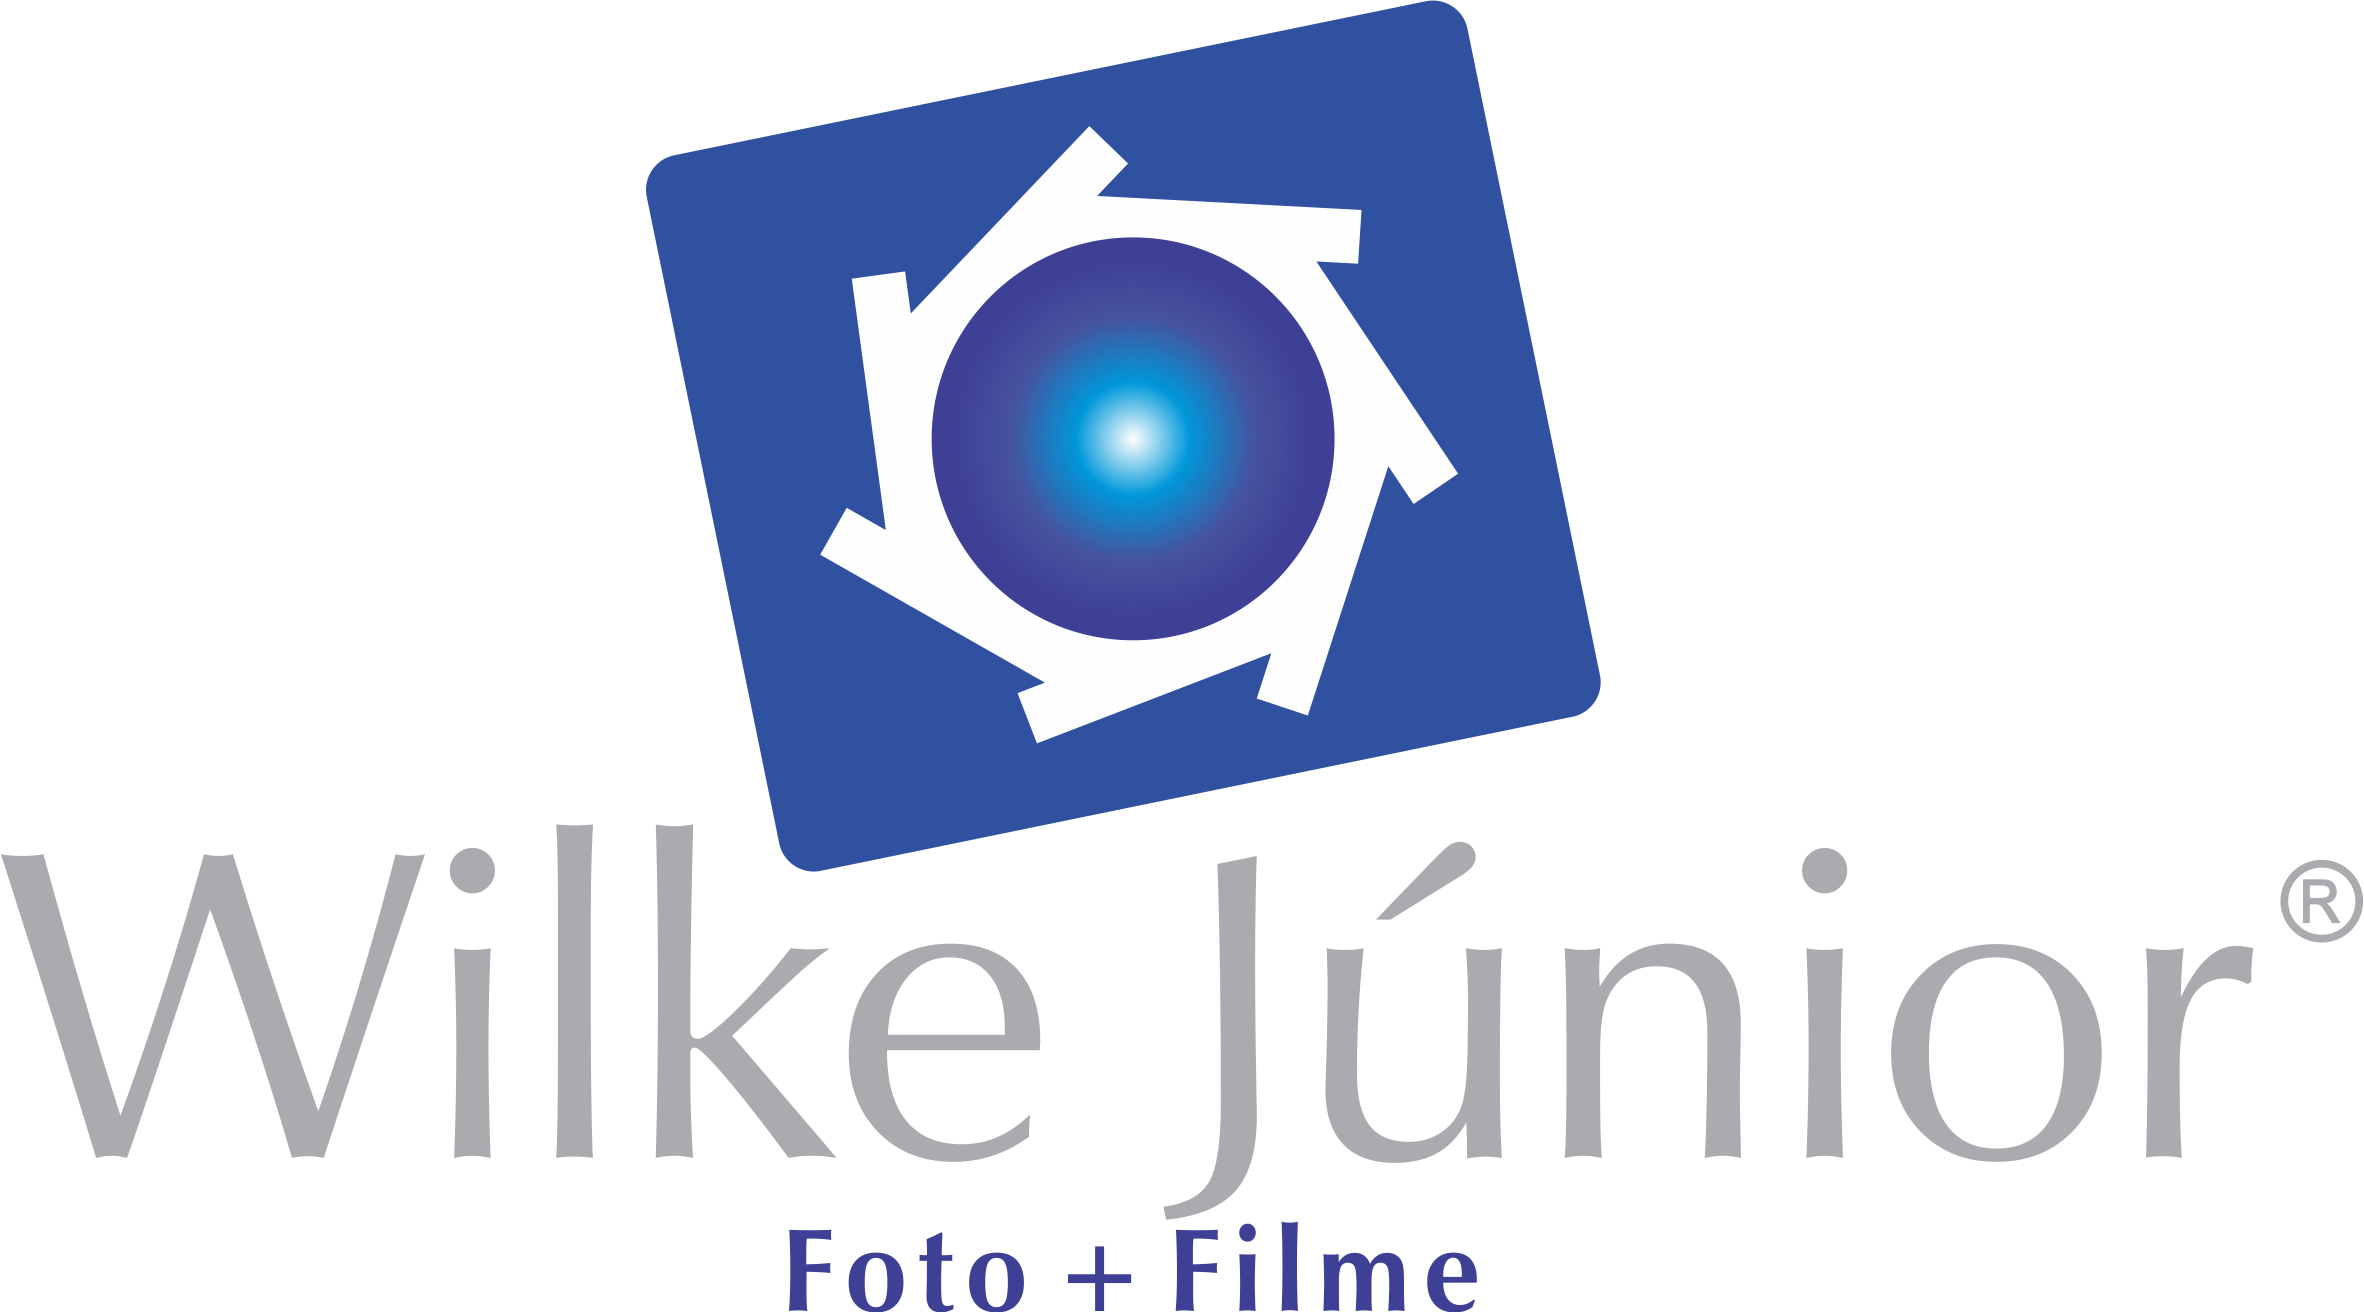 Logomarca Wilke Junior Foto + Filme Lightroom